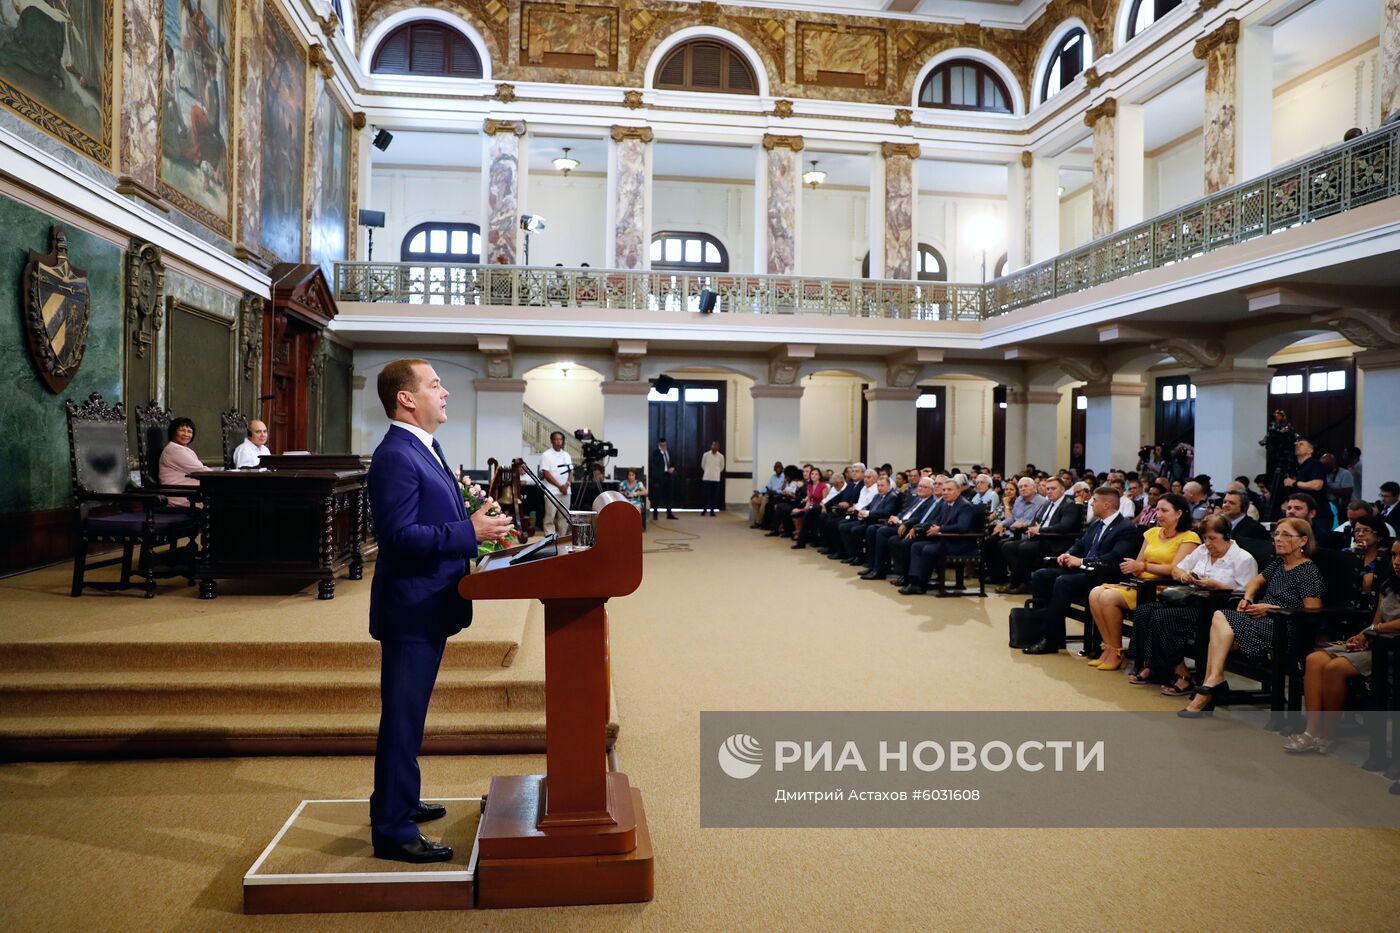 Визит премьер-министра РФ Д. Медведева на Кубу. День второй